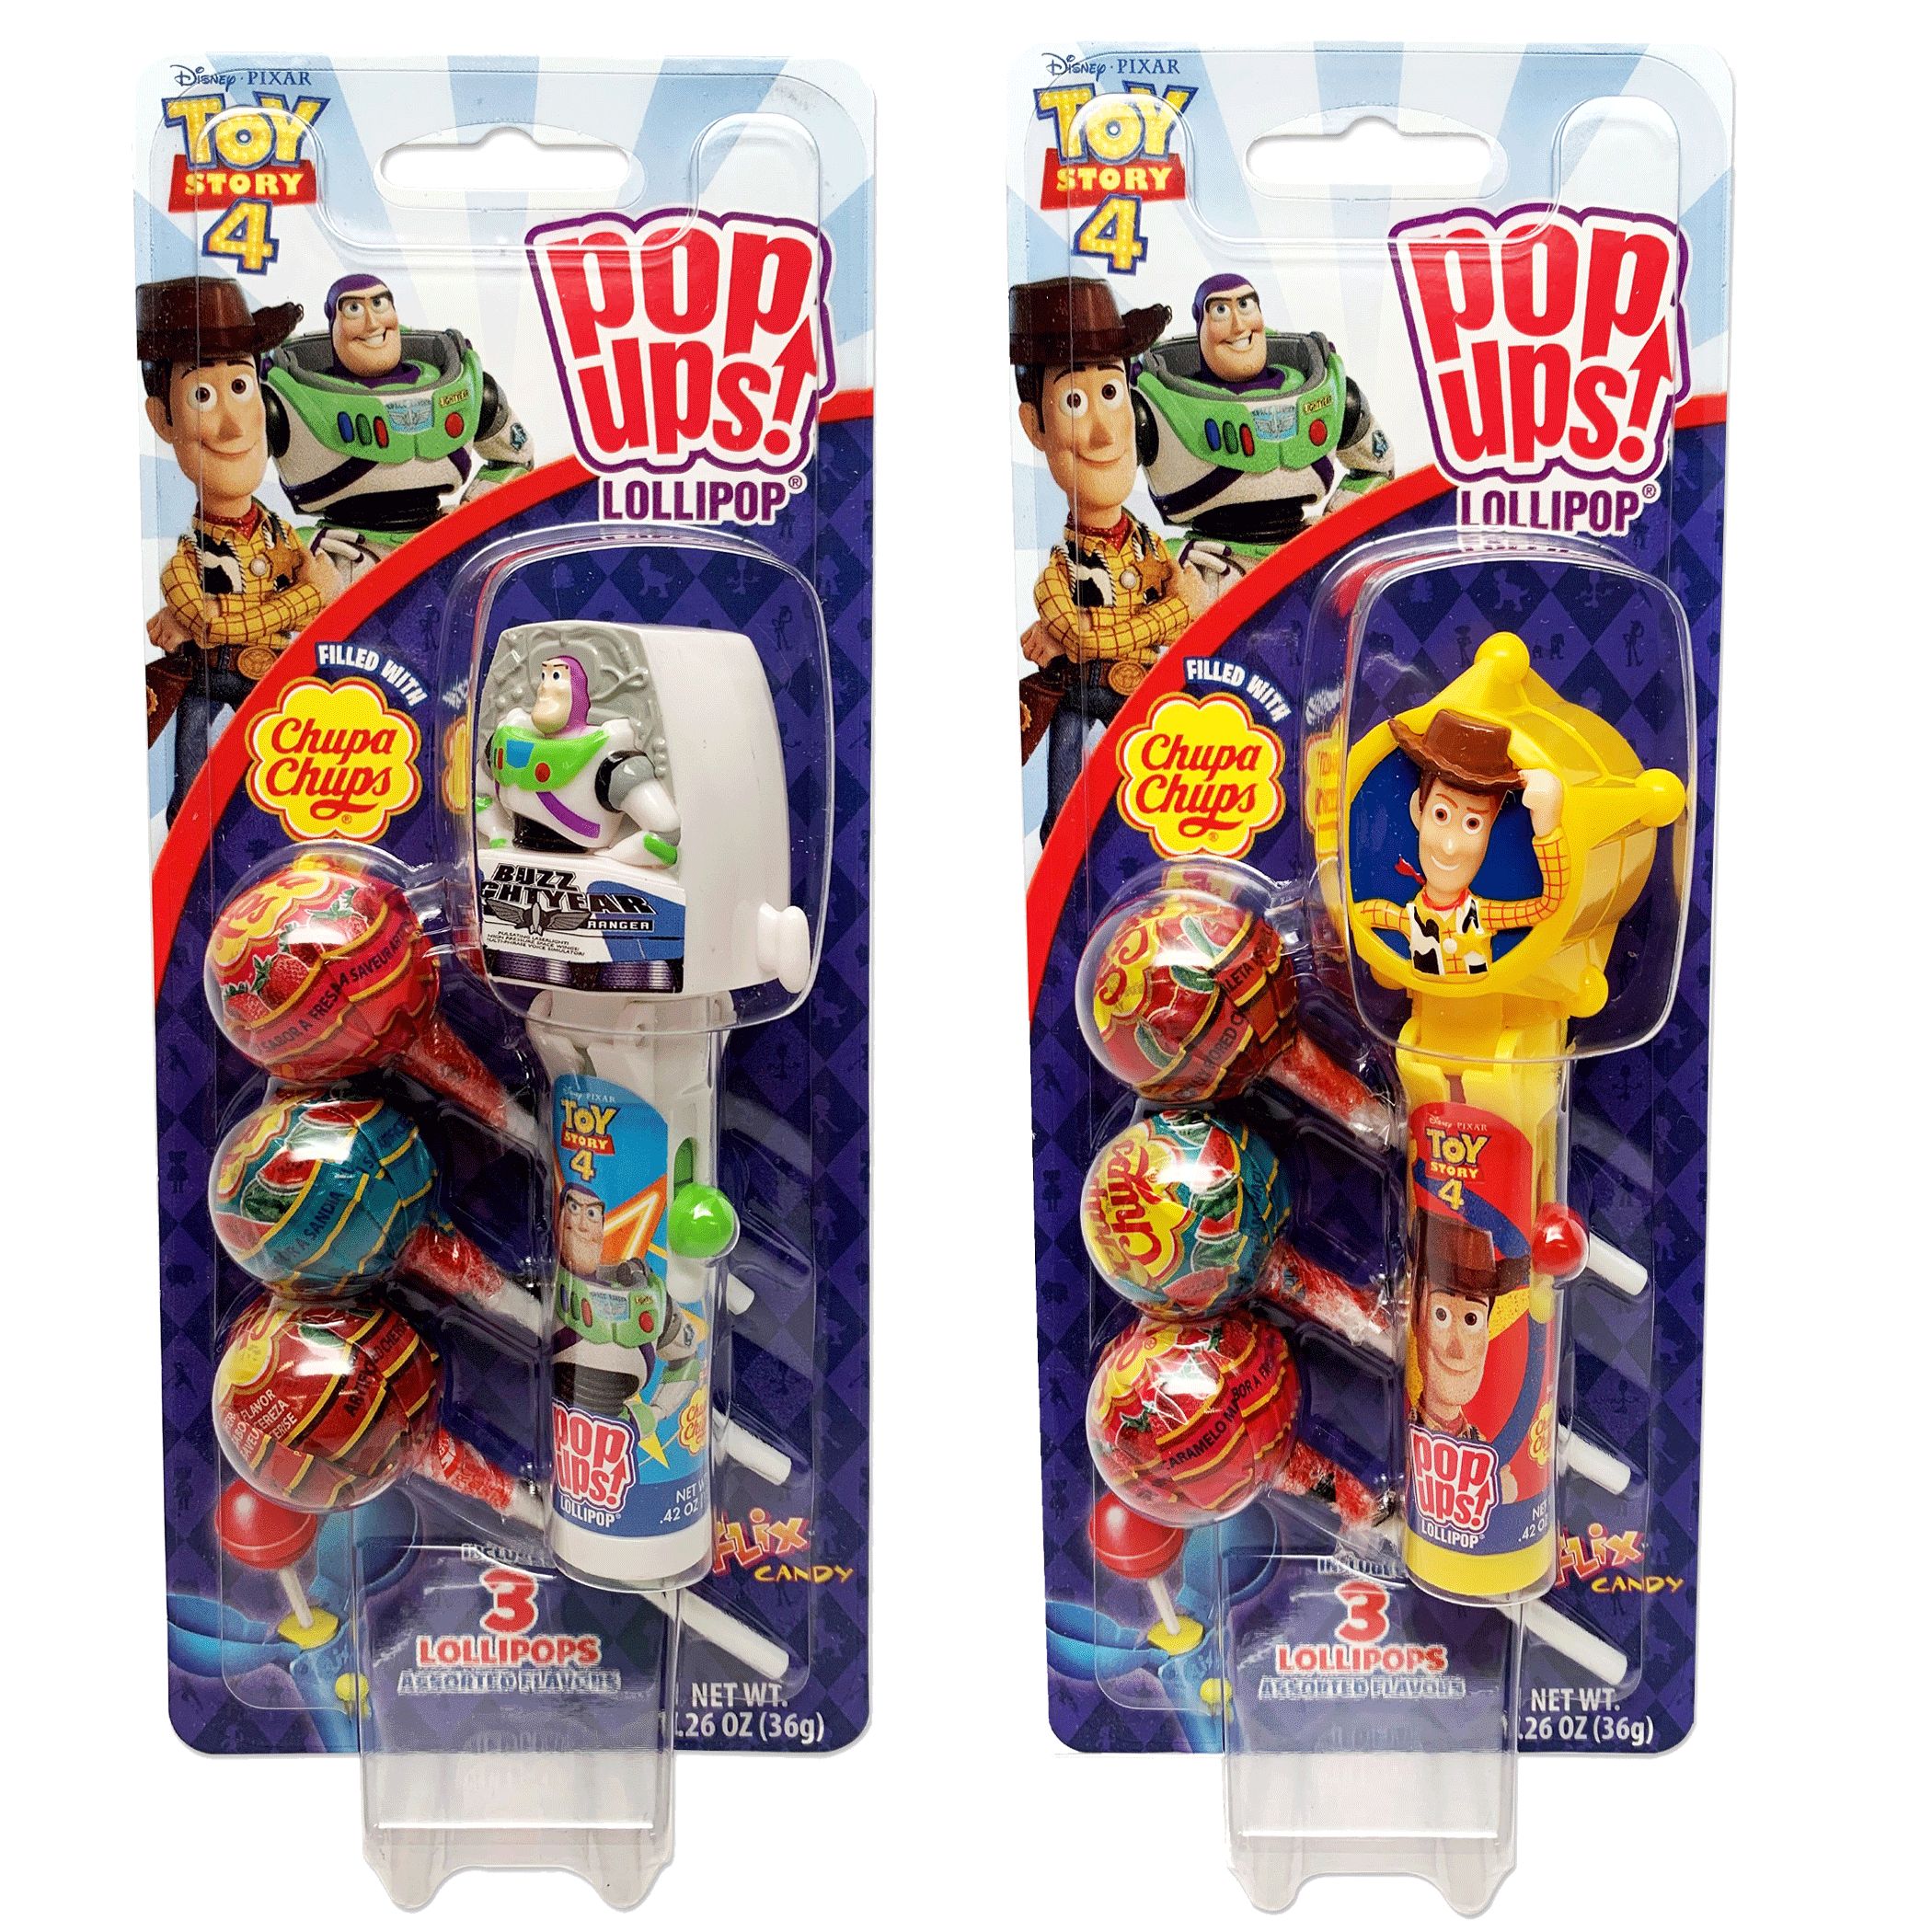 Buy Toy Story 4 + Bonus - Microsoft Store